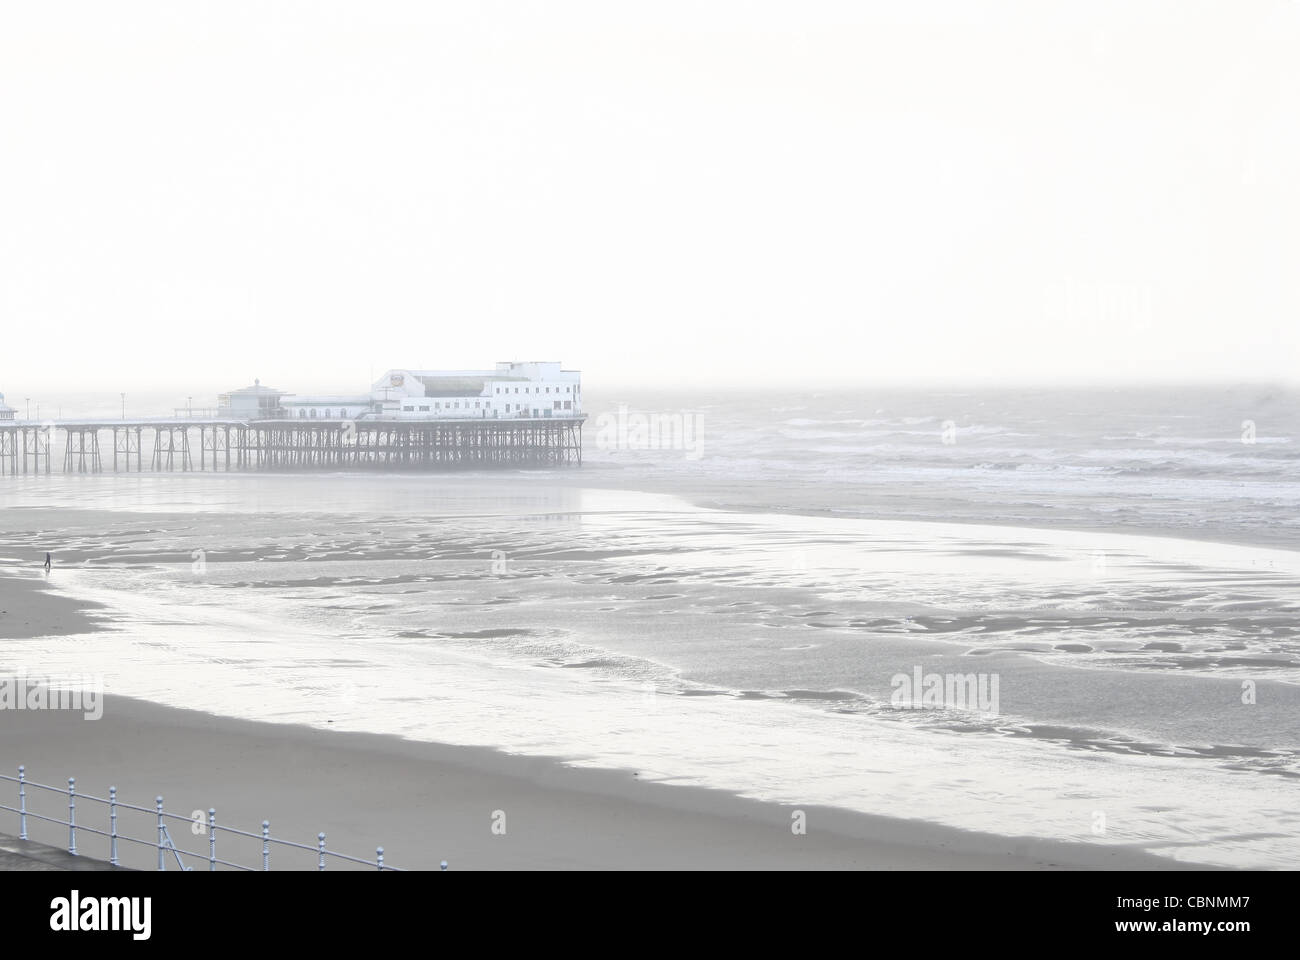 Vista del muelle central durante el mal tiempo,con la persona solitaria, desde el paseo marítimo. Blackpool, Lancashire, Inglaterra, Reino Unido. Foto de stock